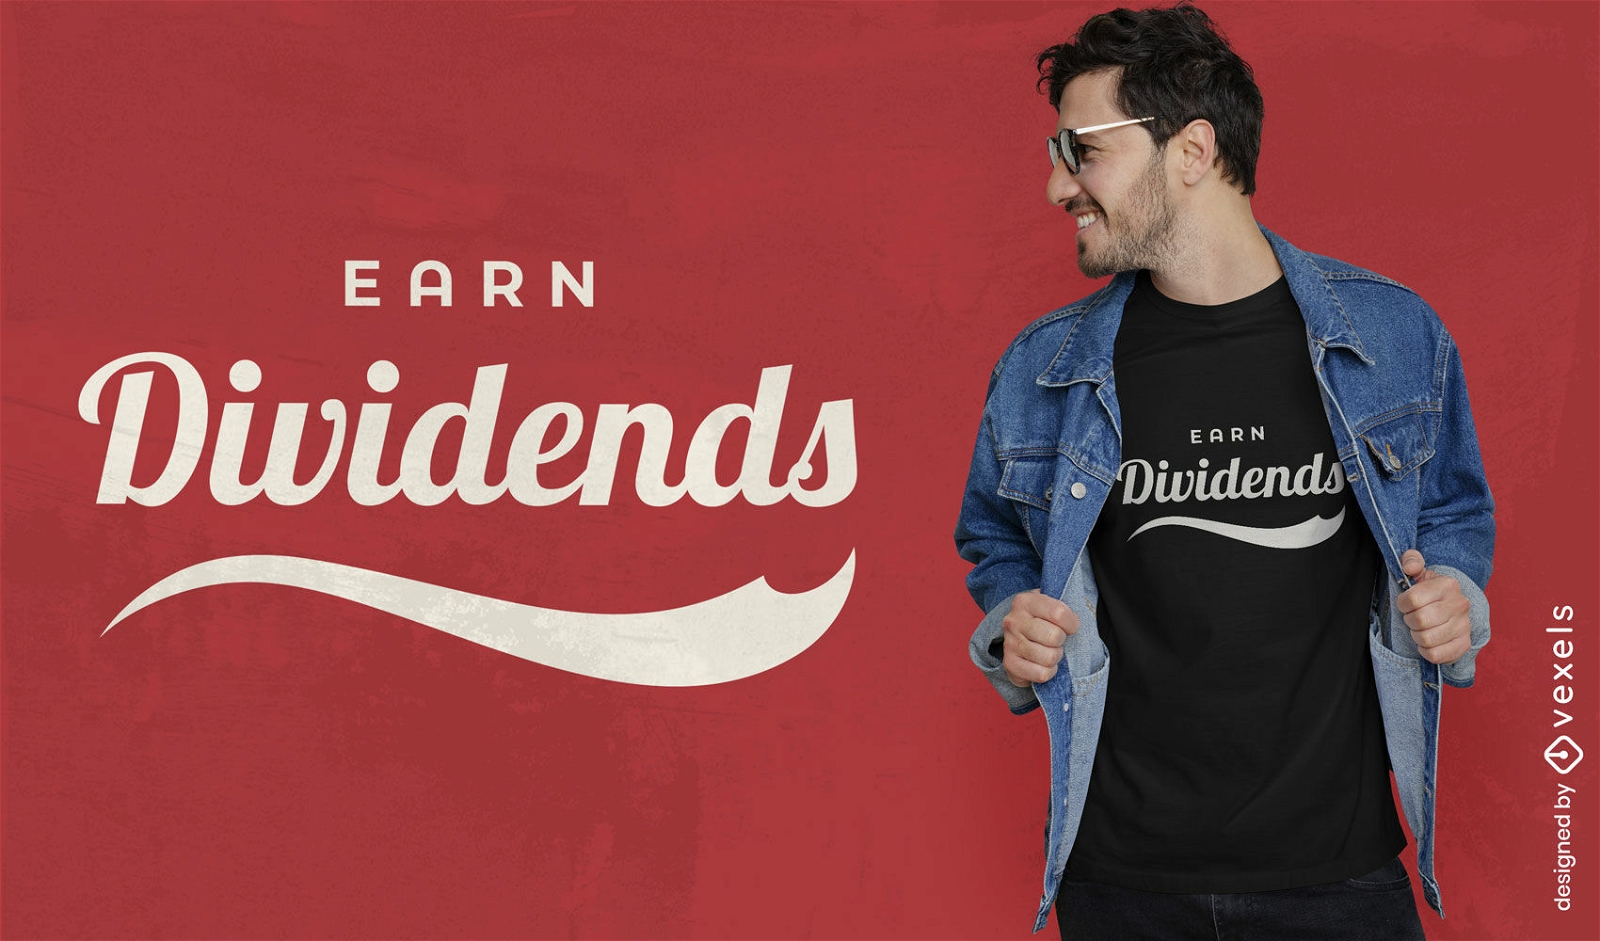 Earn dividends t-shirt design